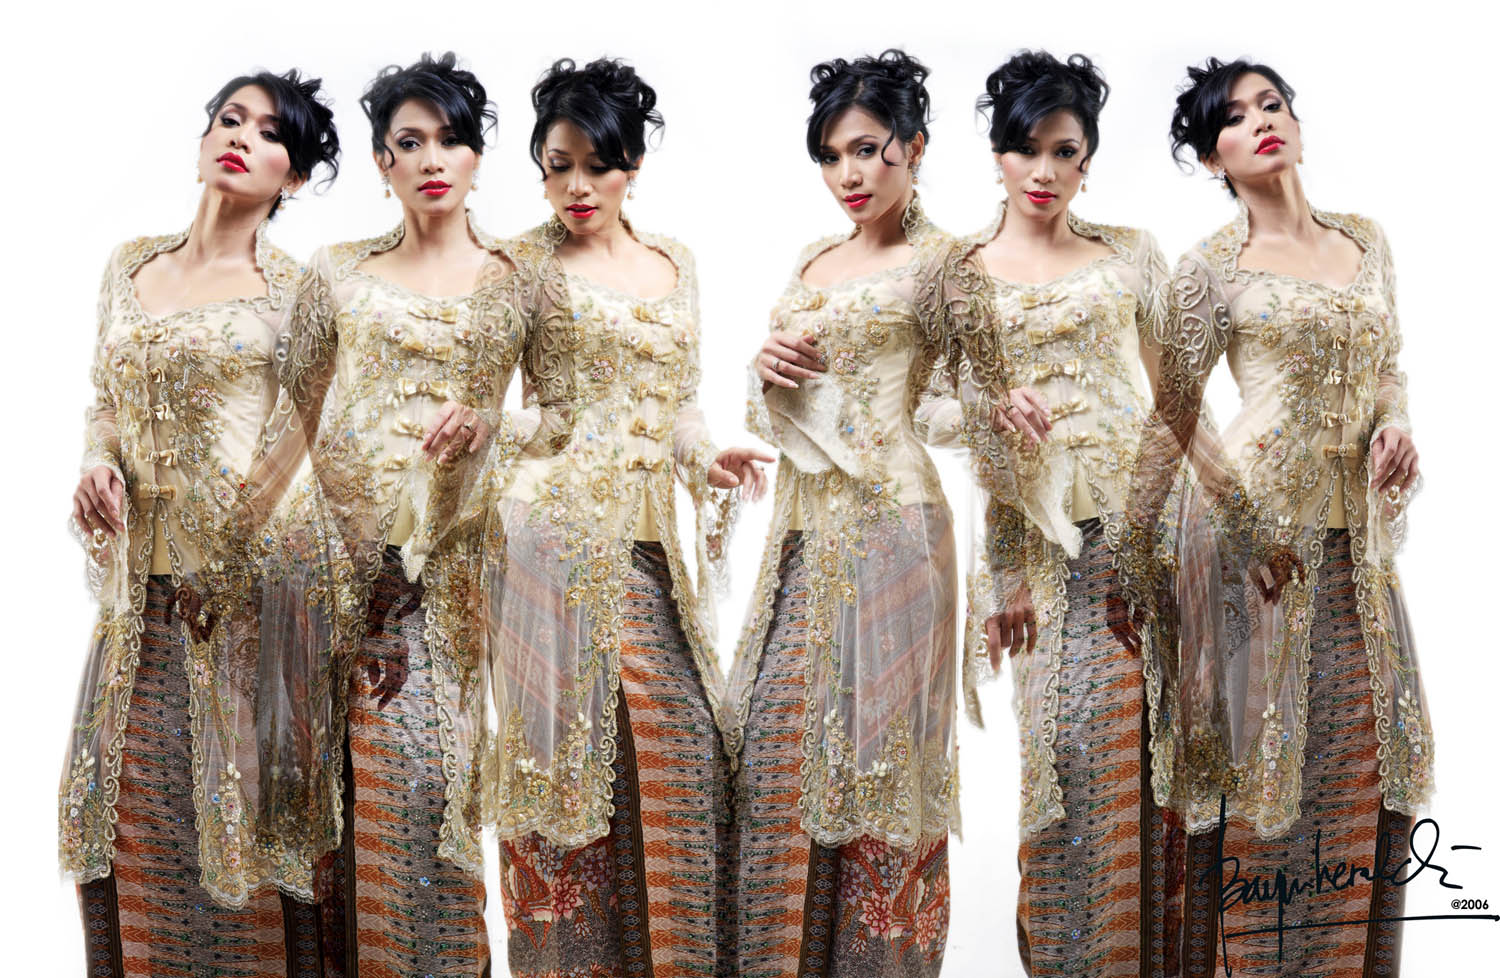 Mignonesia: Kebaya, the Indonesian Women Traditional Costume